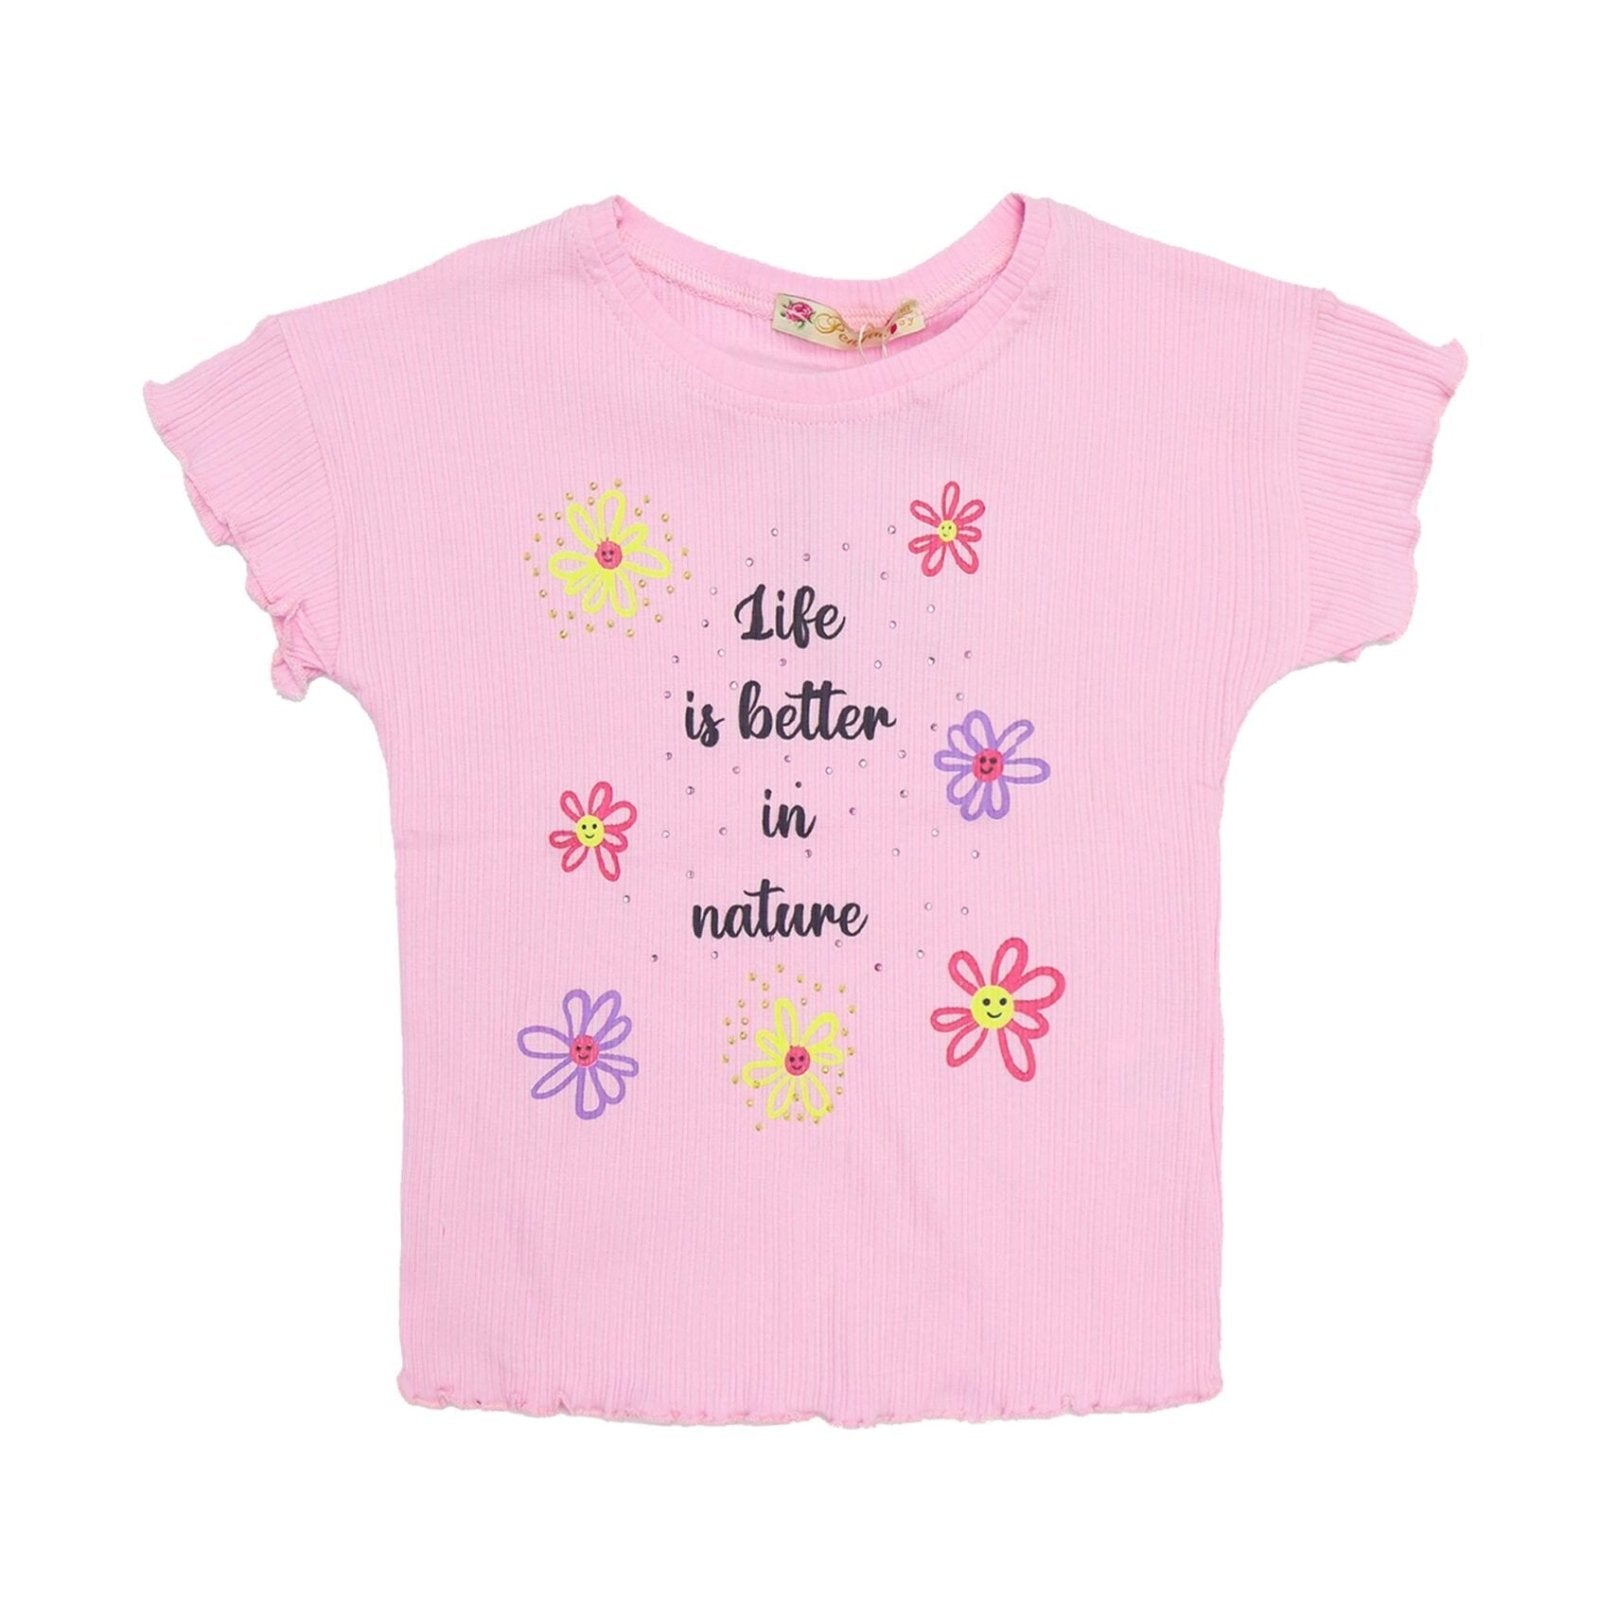 Girls Shirt Flower Print Pink Color | Made in Turkey - Zubaidas Mothershop